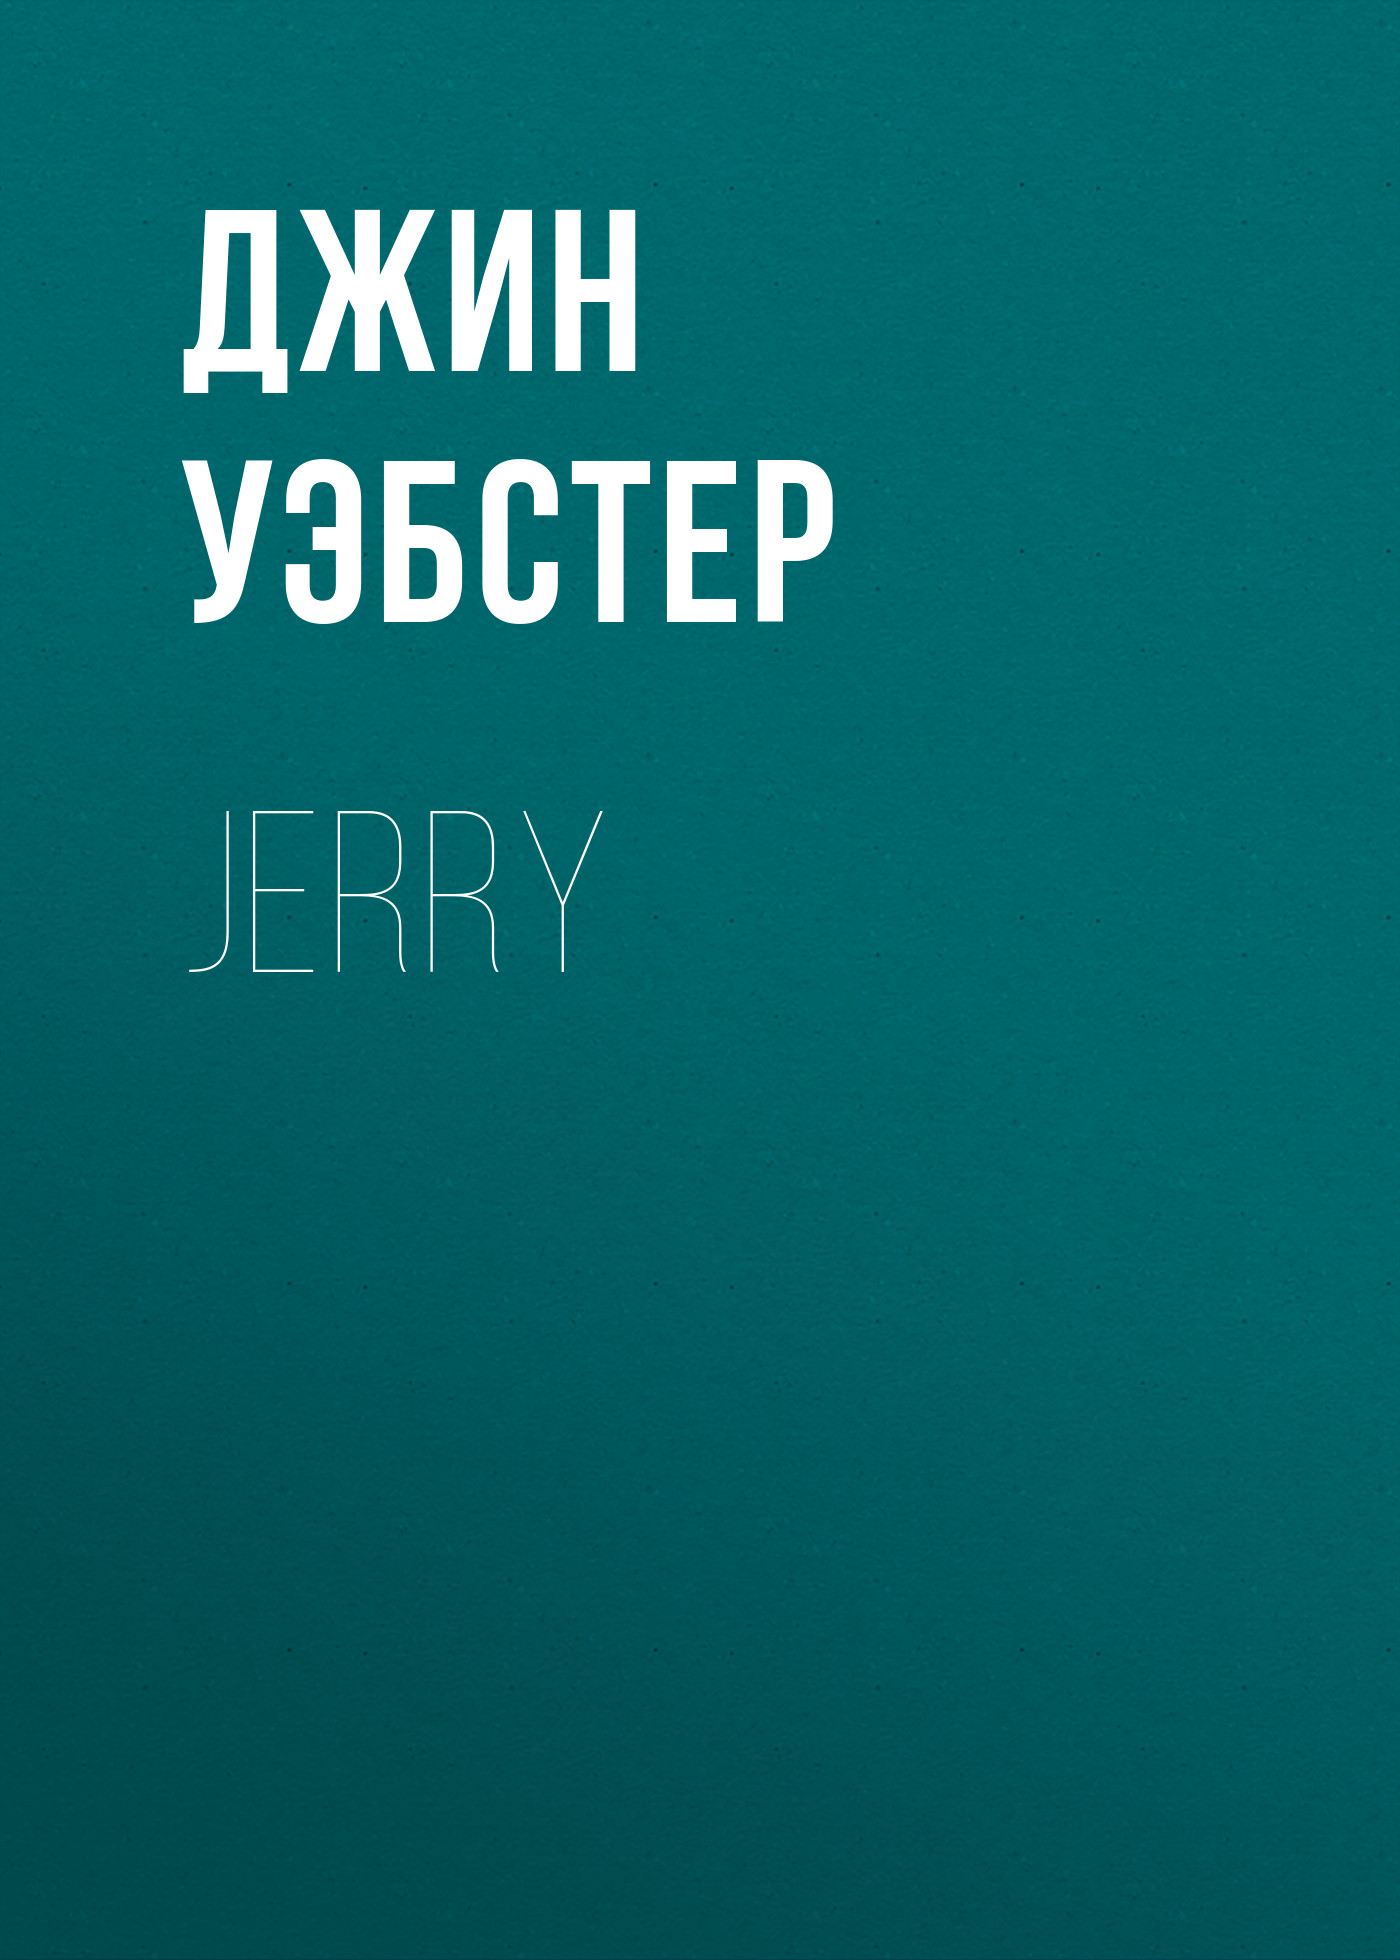 Книга Jerry из серии , созданная Джин Уэбстер, может относится к жанру Зарубежная старинная литература, Зарубежная классика, Зарубежные любовные романы. Стоимость электронной книги Jerry с идентификатором 34842750 составляет 0 руб.